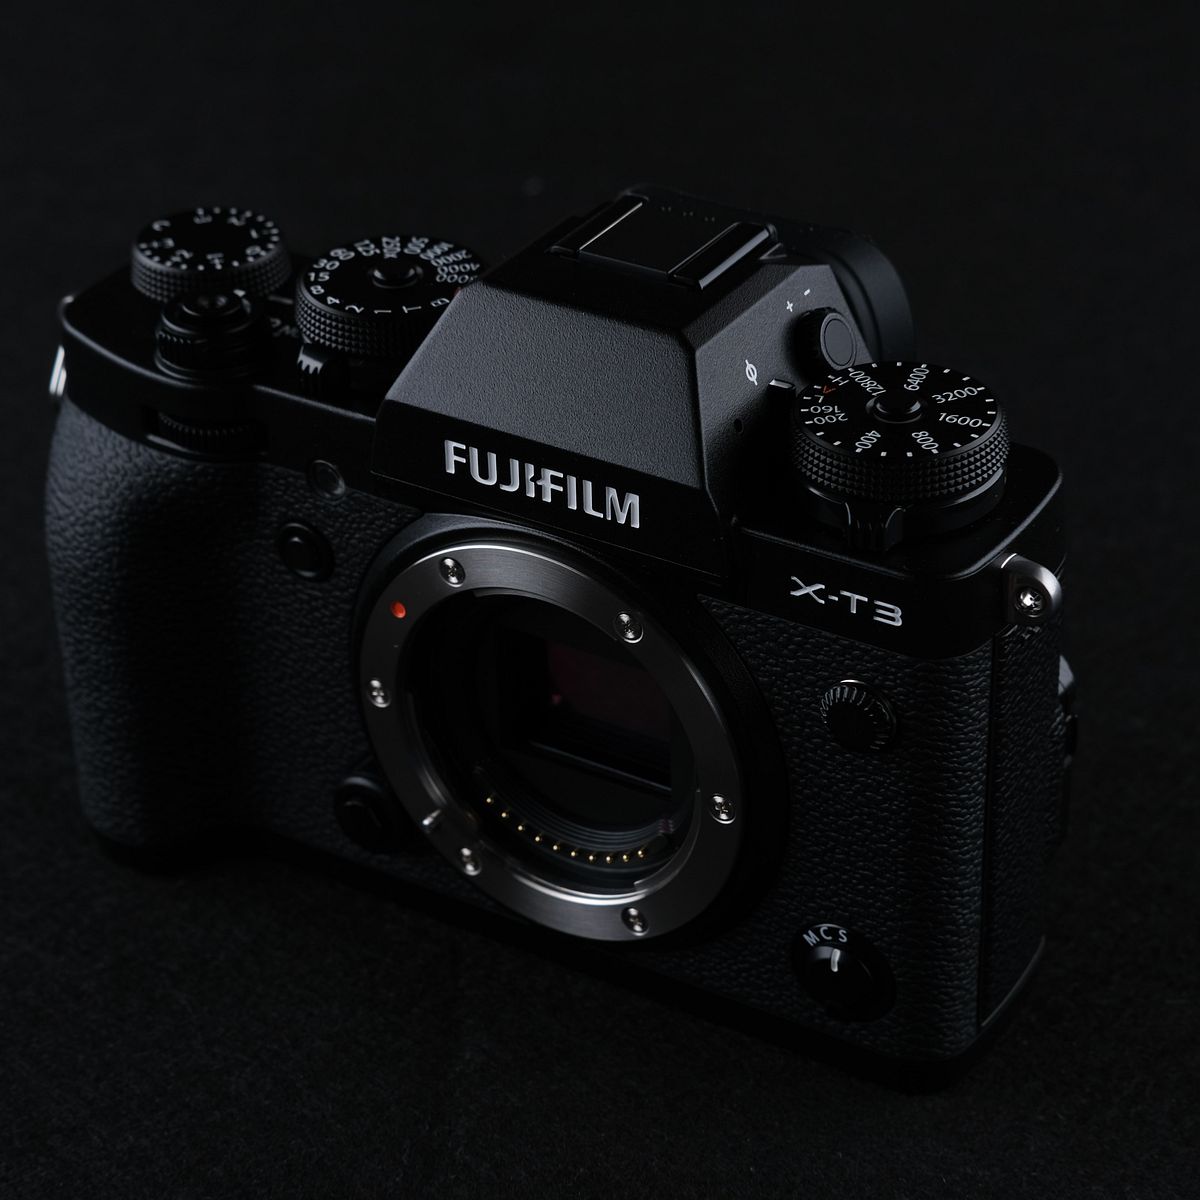 Fujifilm X-T3 body in black